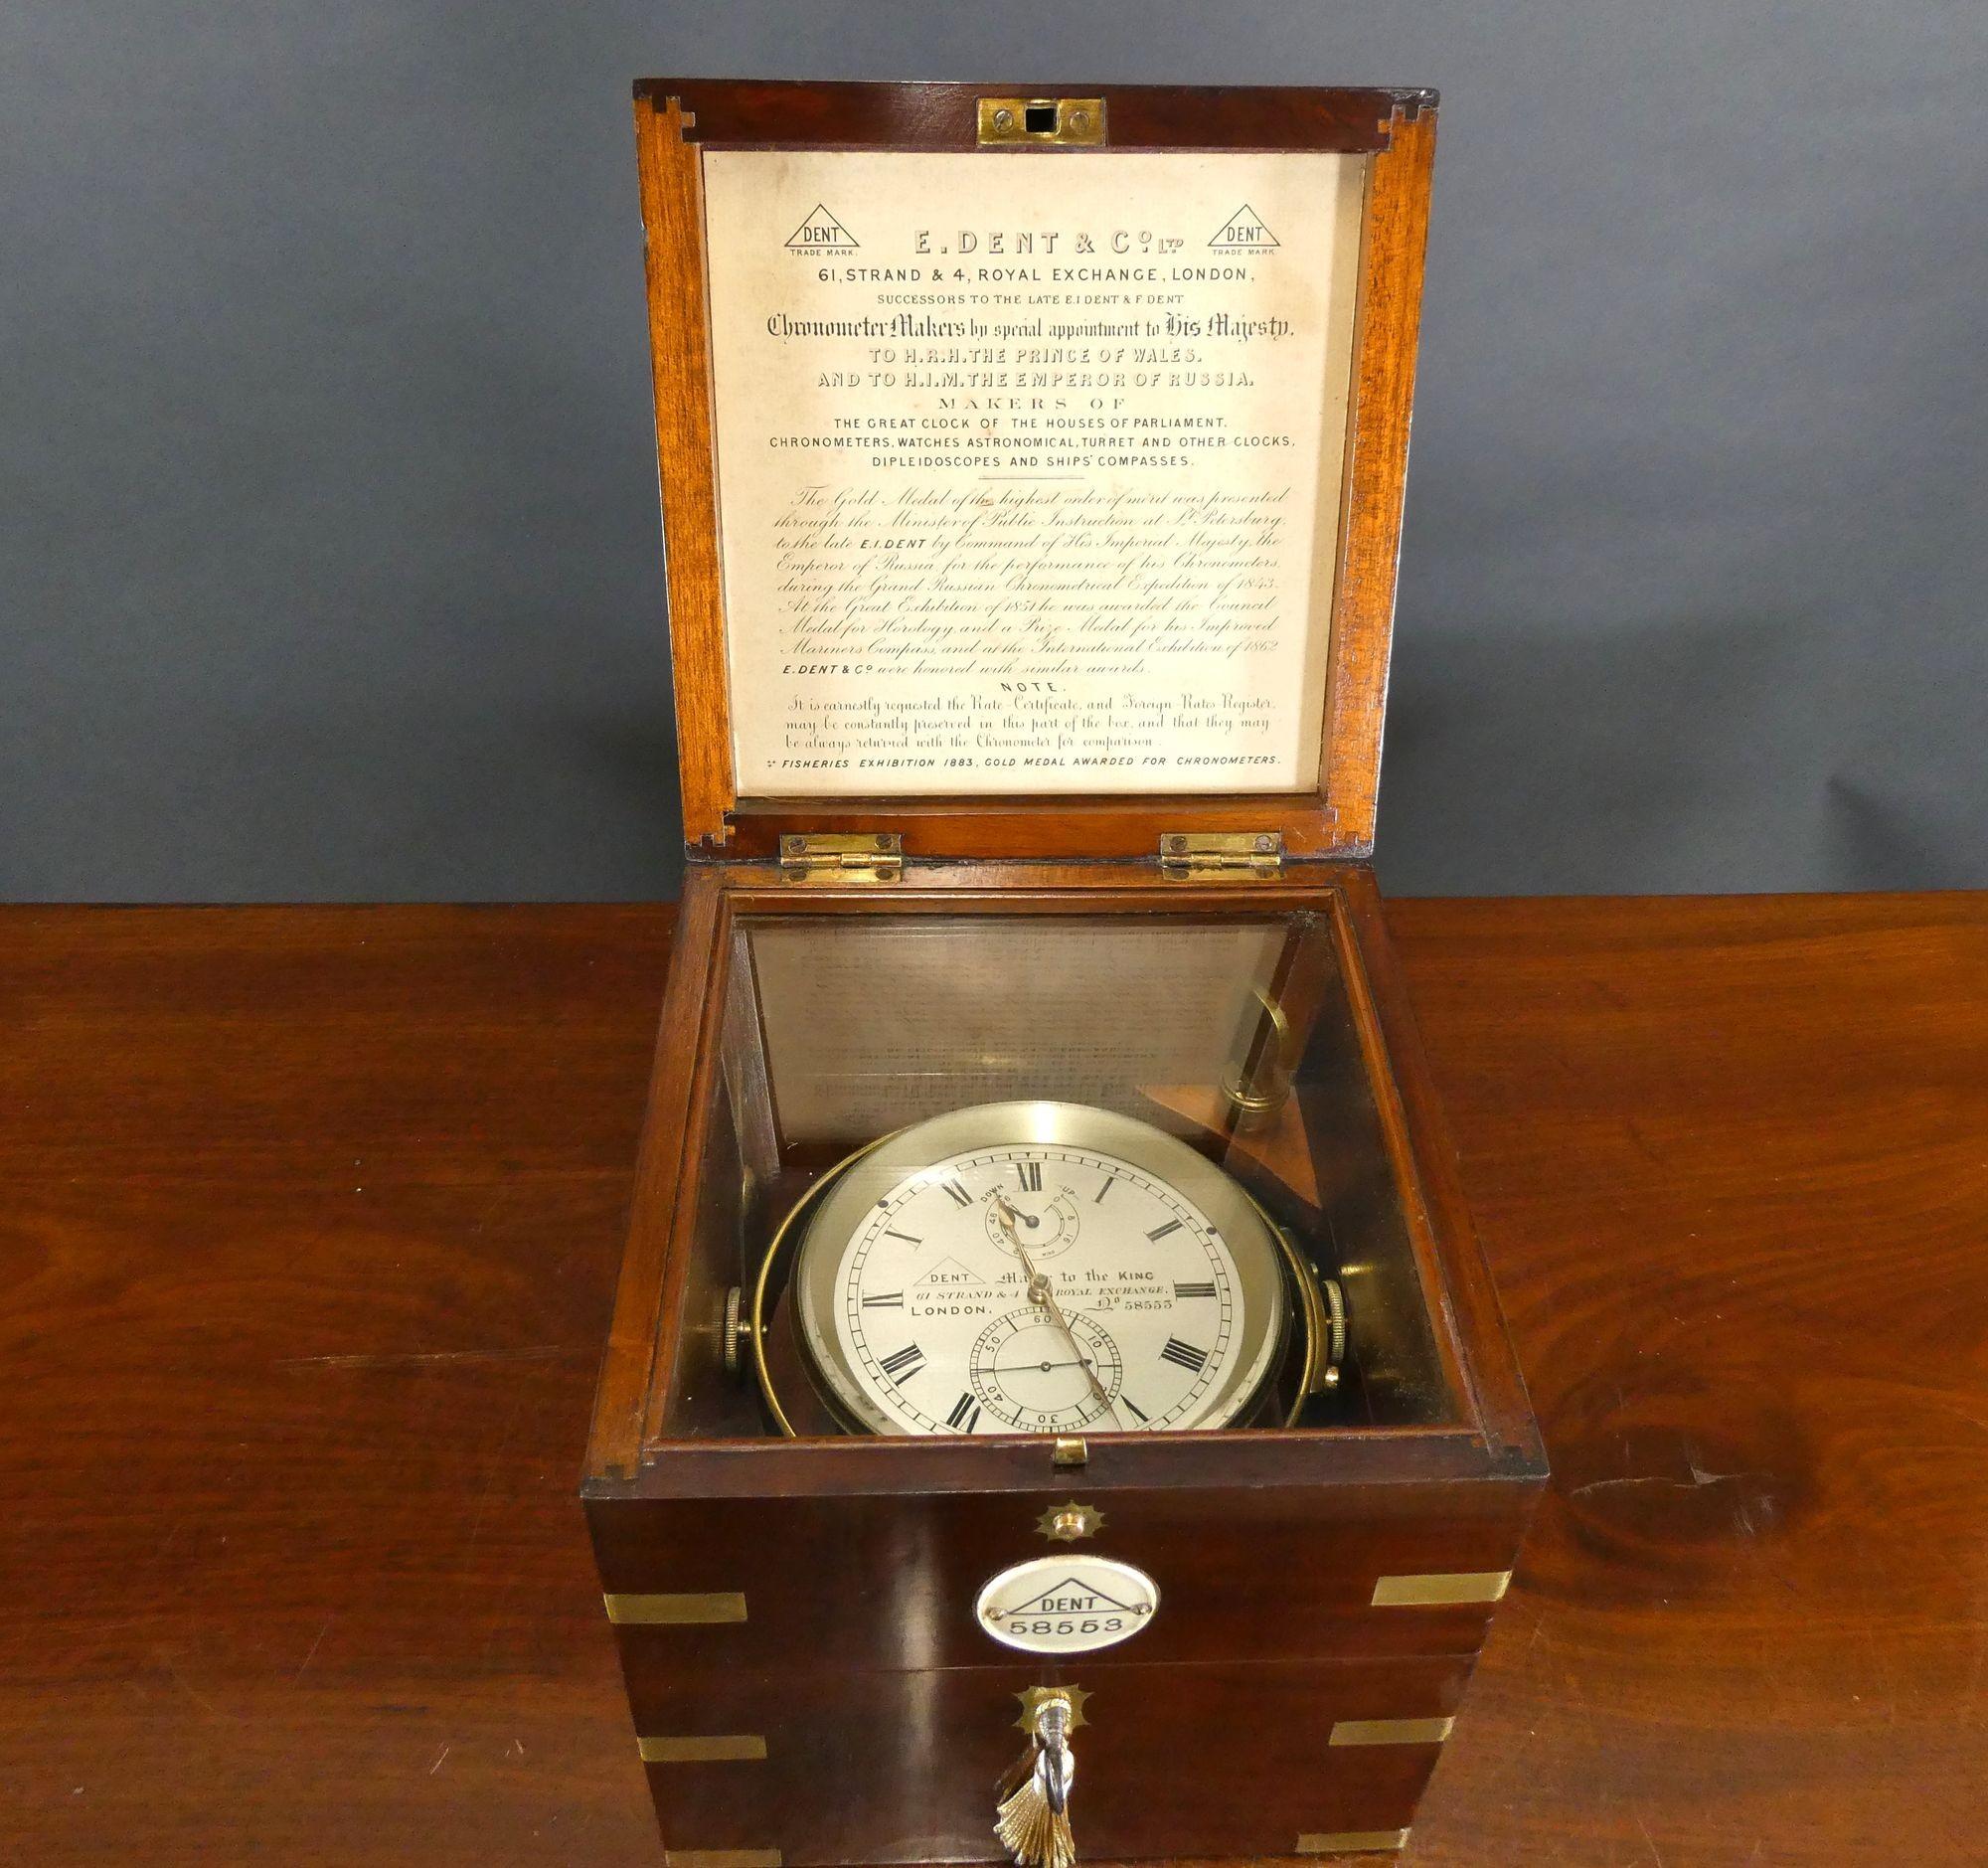 Mahogany Fine Two Day Marine Chronometer by Dent, London. No58553